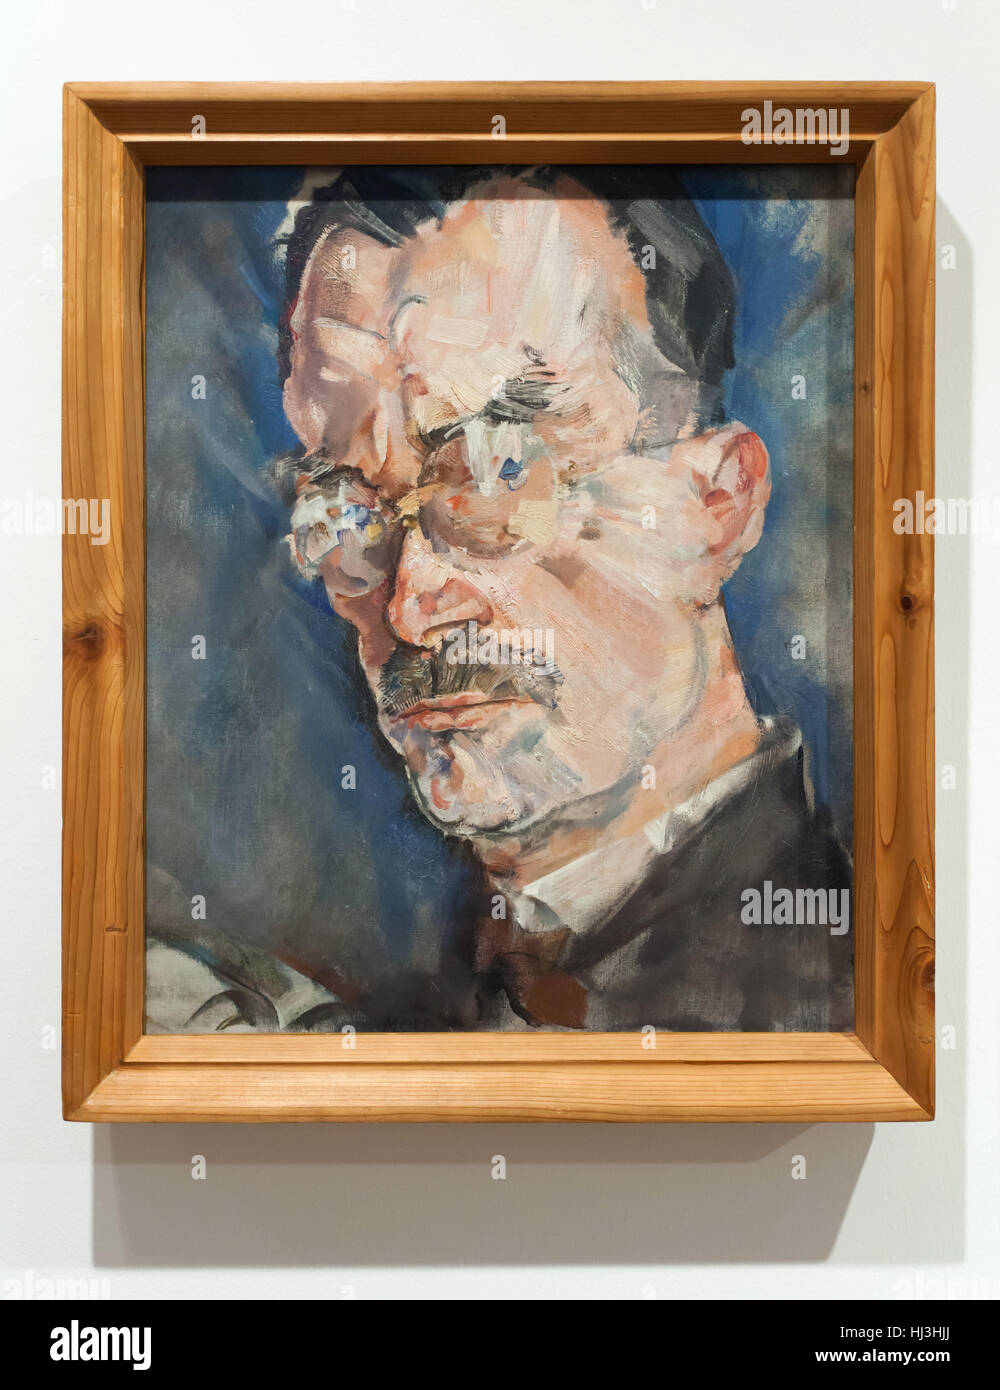 Portrait de l'écrivain allemand Thomas Mann (1926) peintre expressionniste autrichien par Max Oppenheimer, également connu sous le nom de Mopp sur affichage dans la Wien Museum (musée de Vienne) à Vienne, Autriche. Banque D'Images